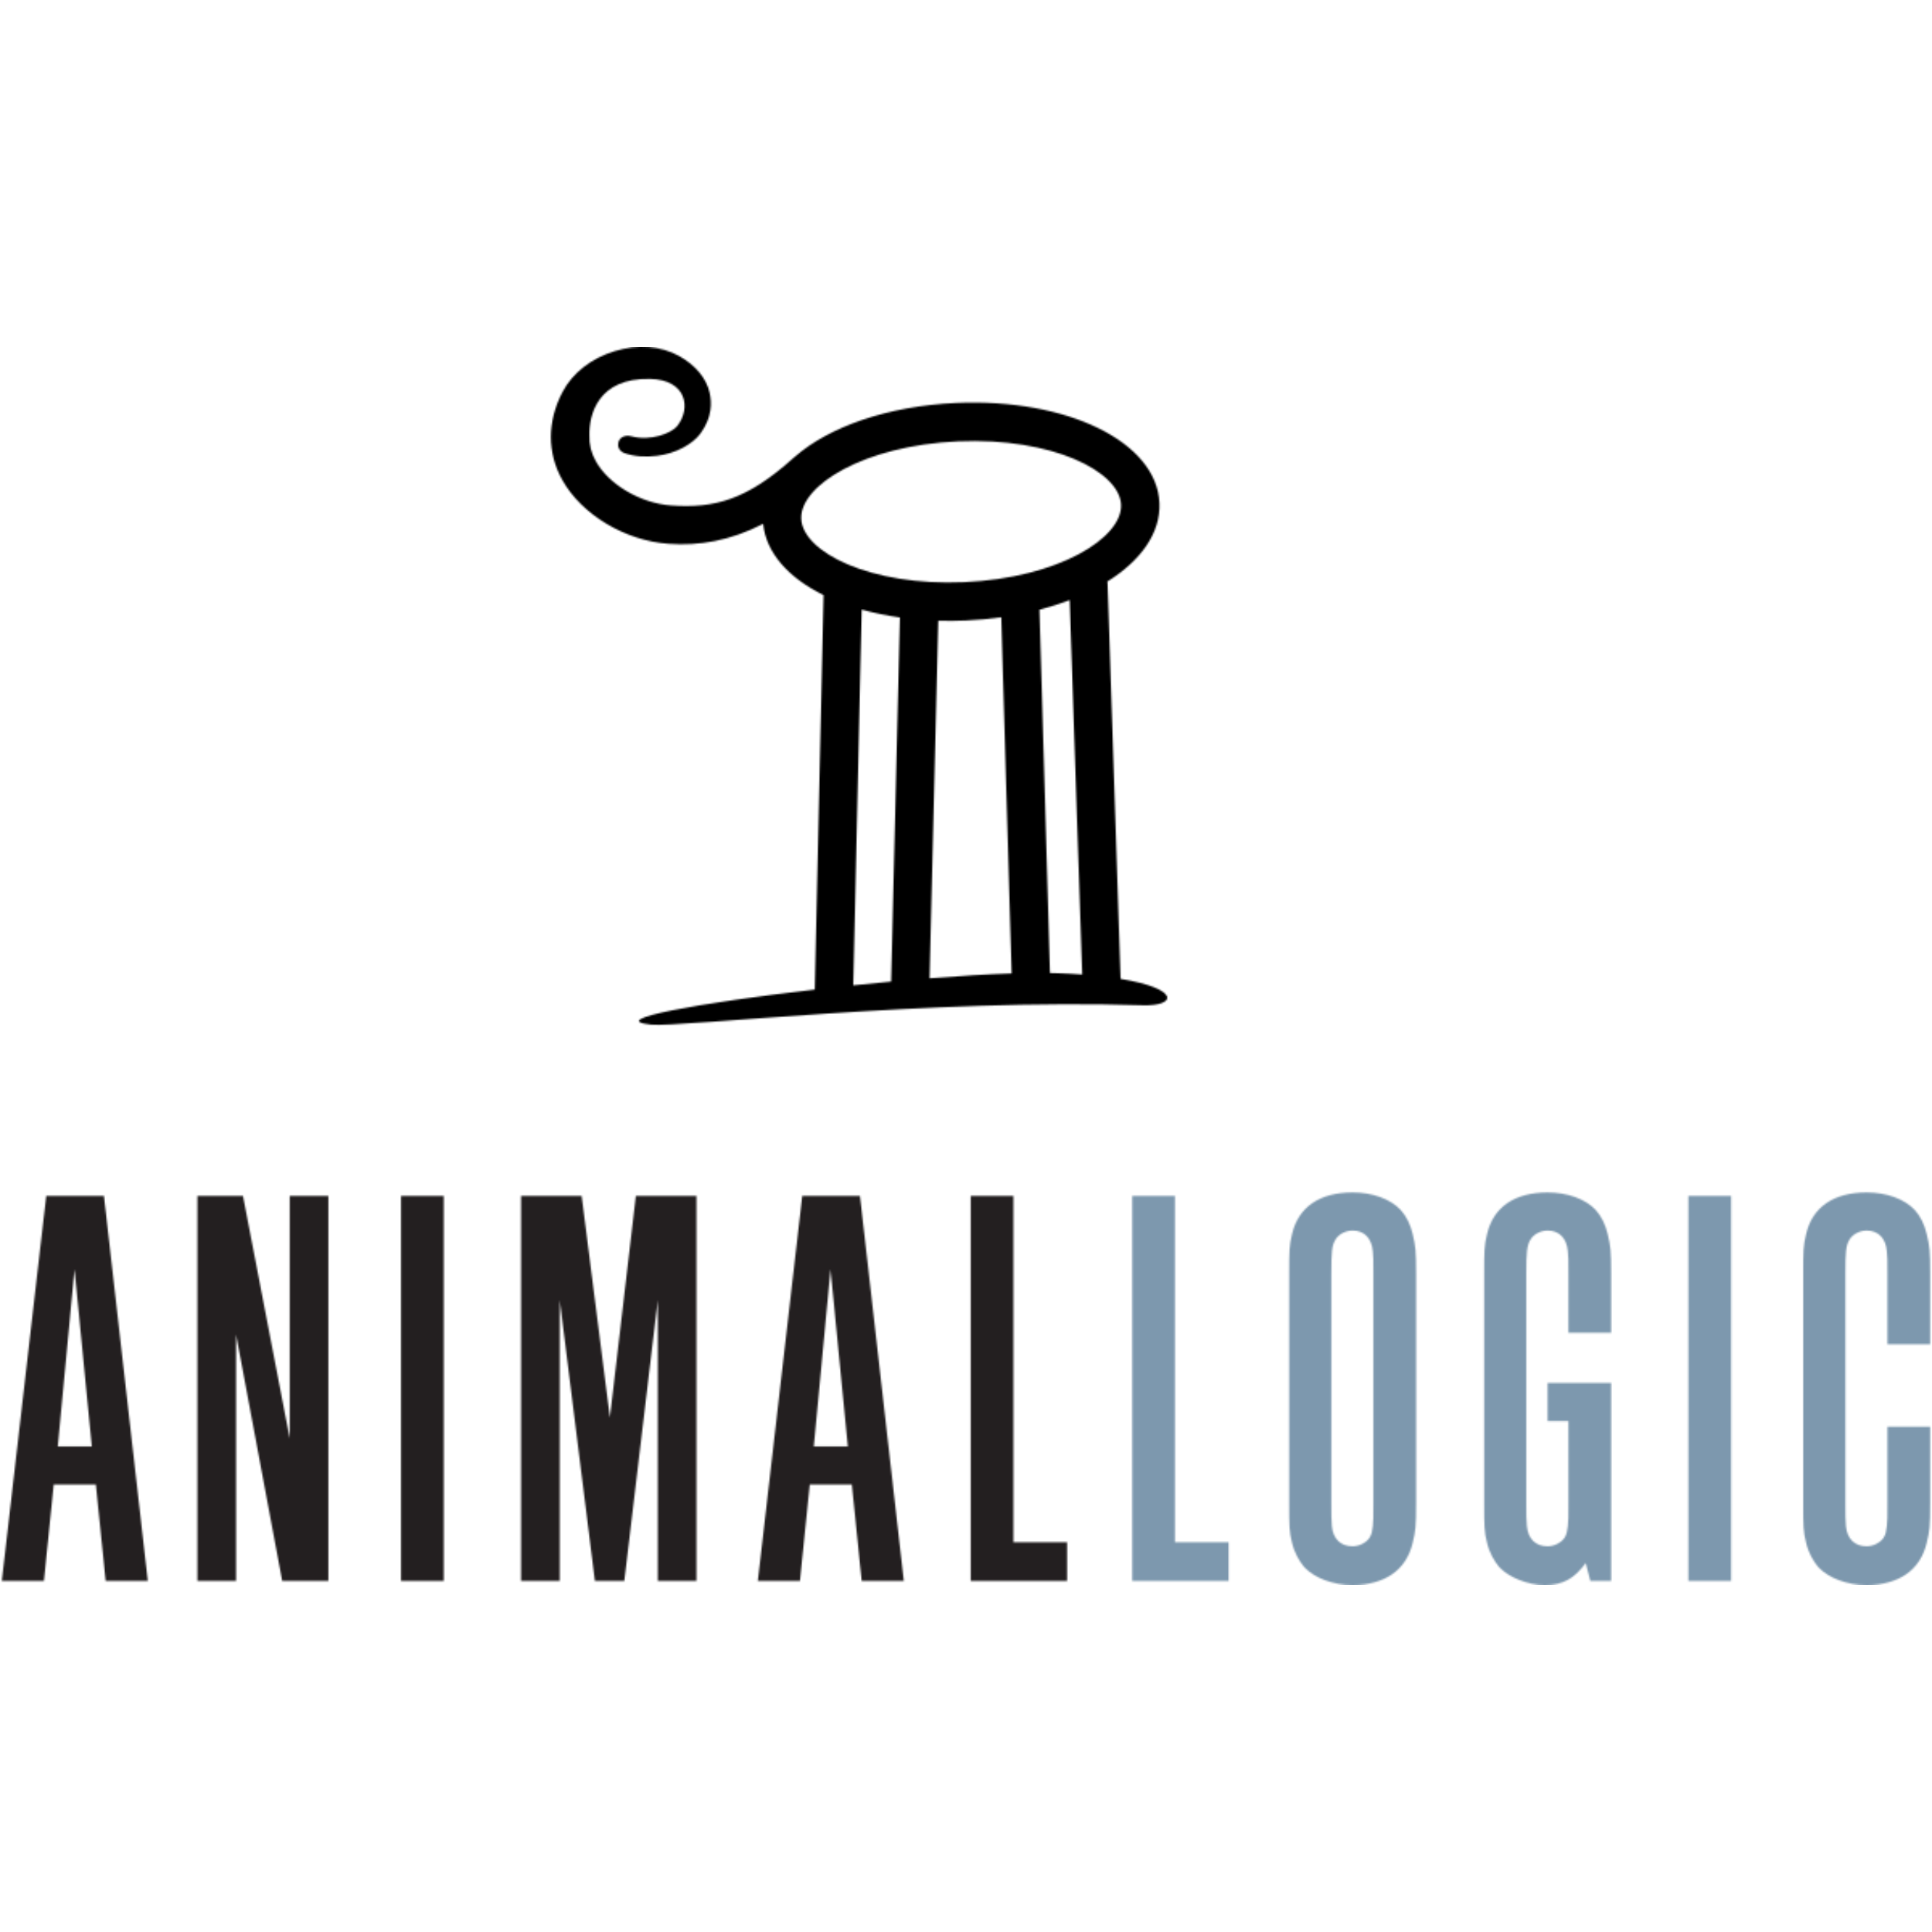 Animal Logic : Brand Short Description Type Here.